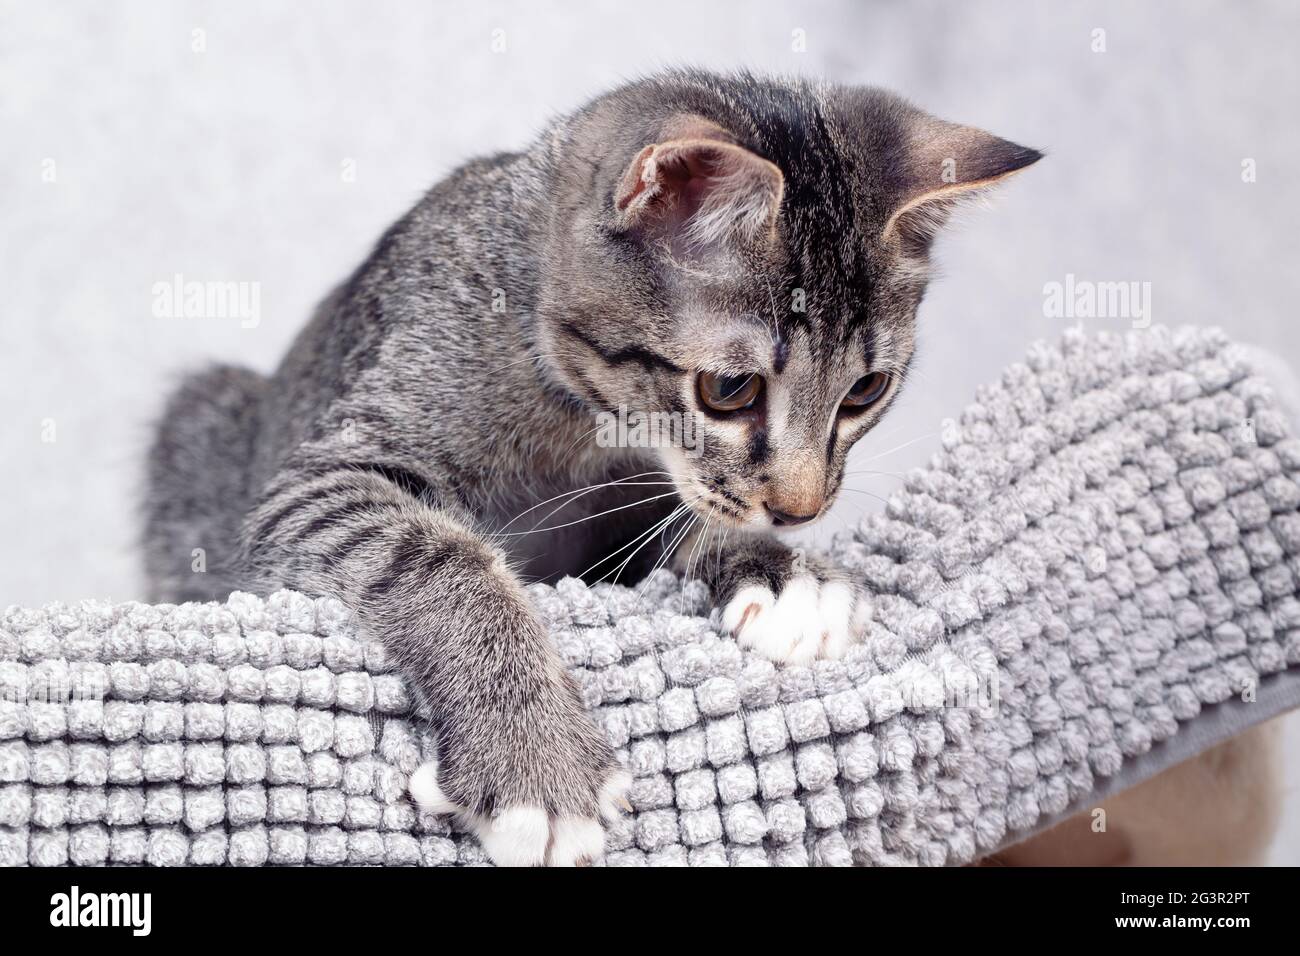 Un gatito de grey a rayas se encuentra en casa sobre una estera gris. Primer plano, enfoque selectivo Foto de stock